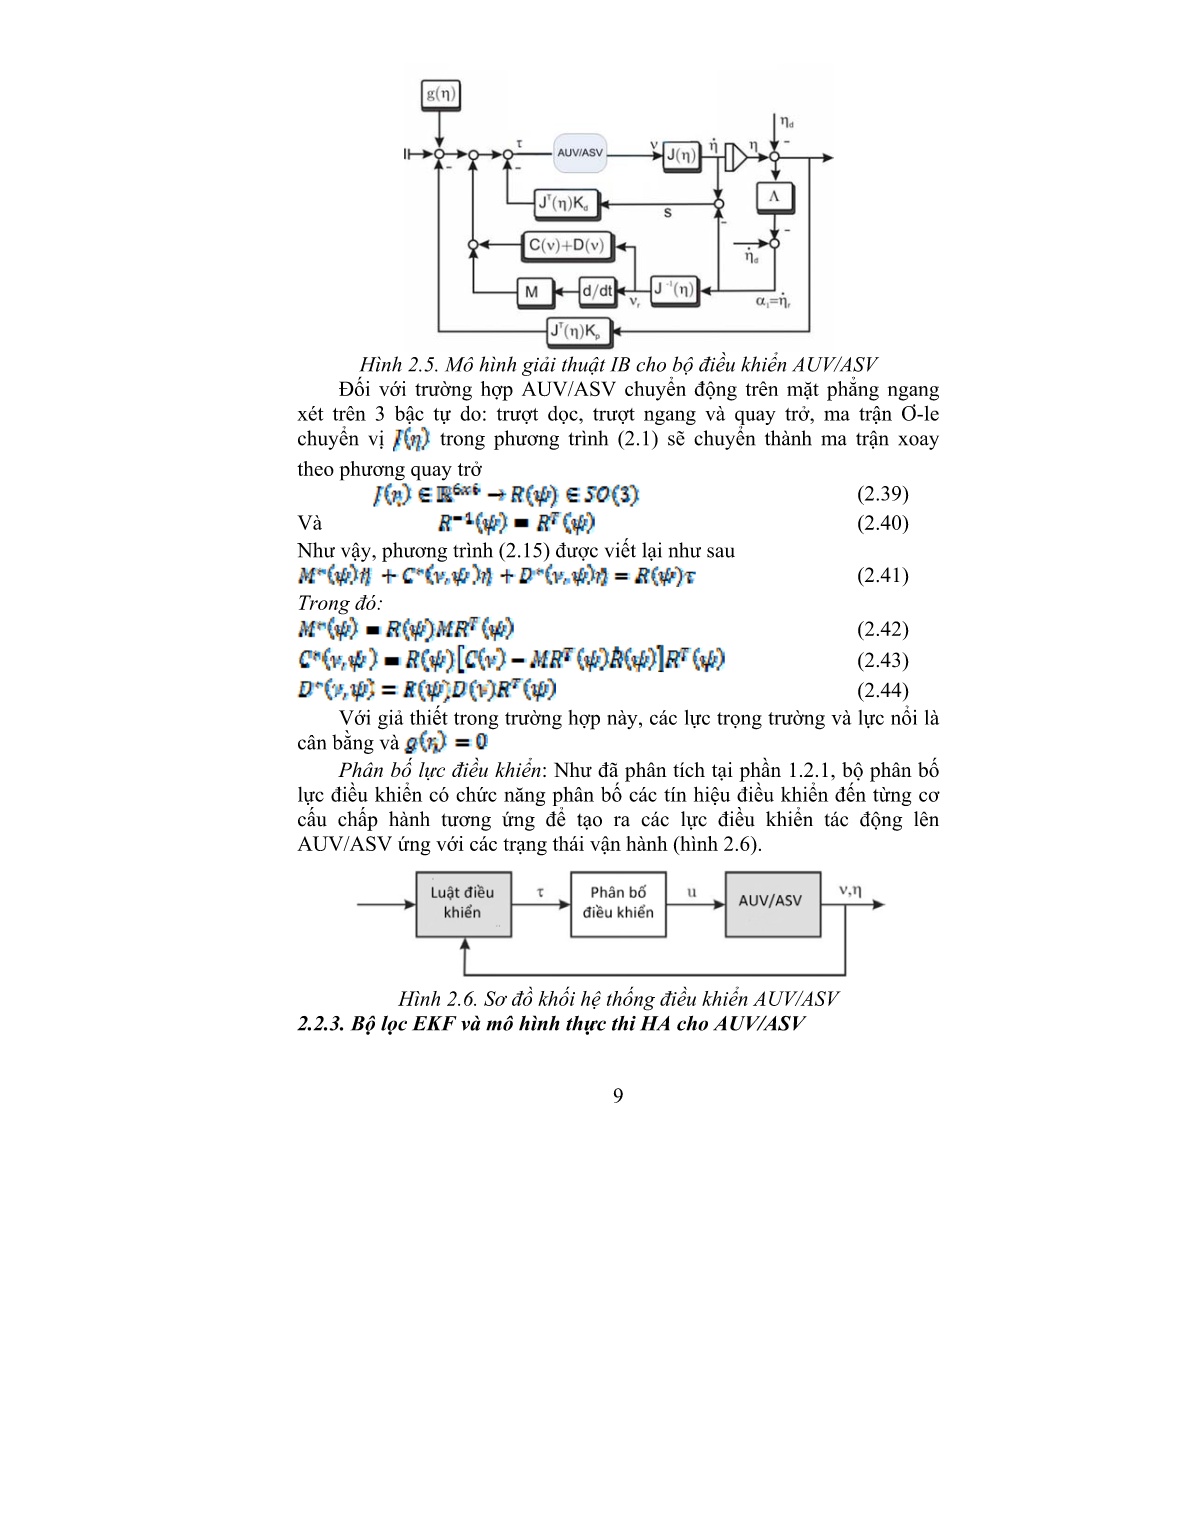 Tóm tắt Luận án Nghiên cứu phương pháp hướng đối tượng trong phân tích và thiết kế 2 điều khiển chuyển động cho thiết bị tự hành AUV/ASV với chuẩn SysML- Modelica và Automate lai trang 9